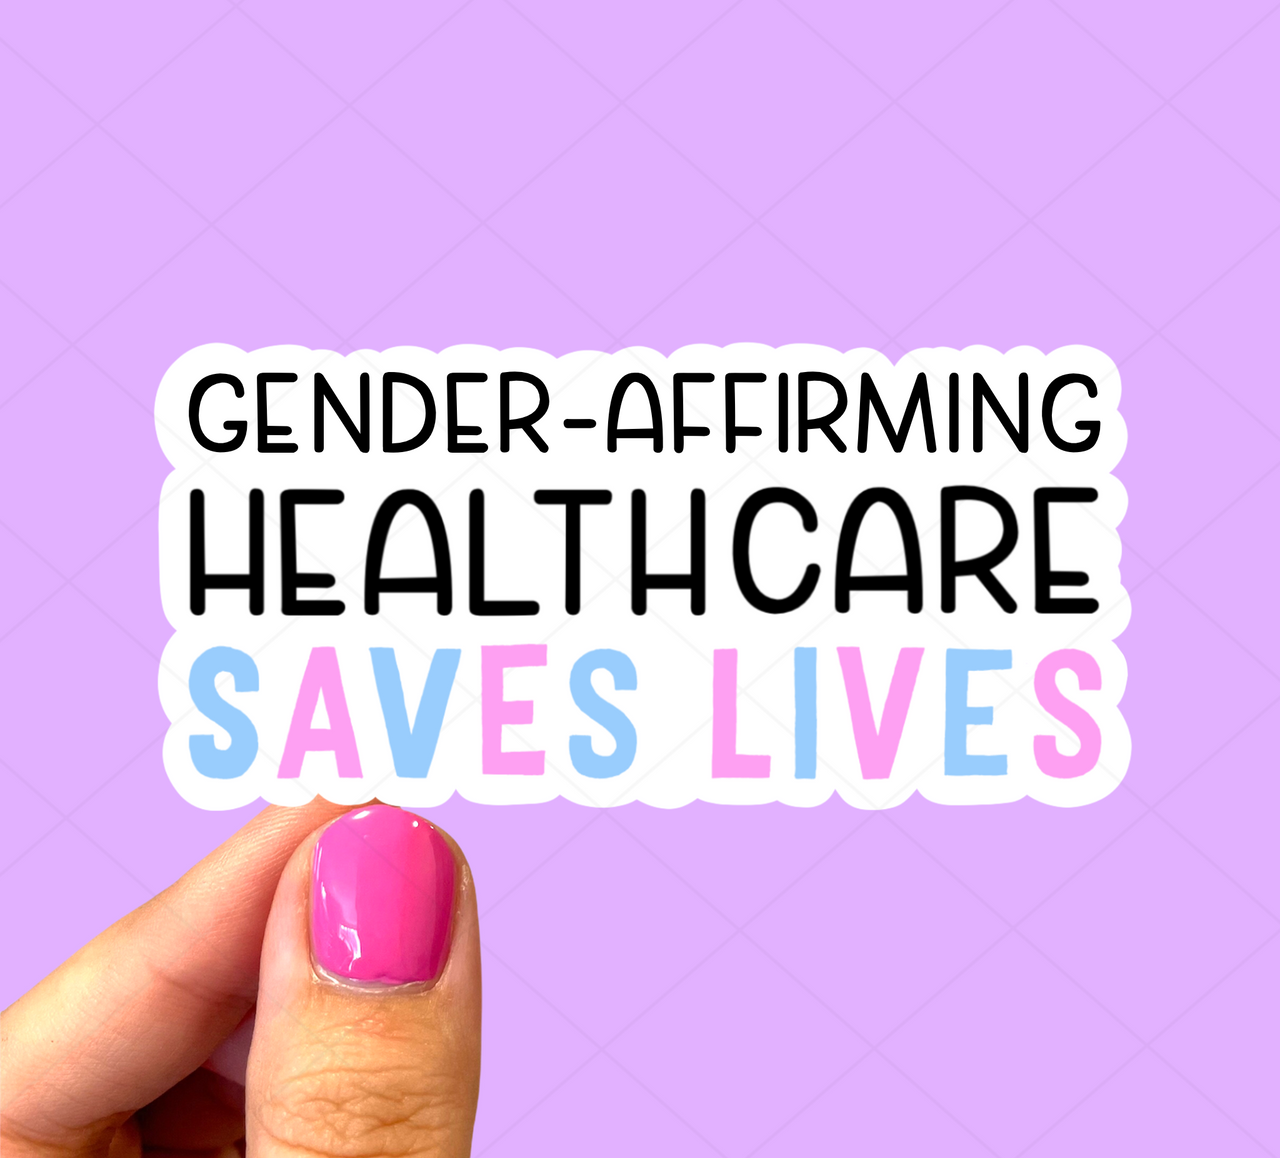 Gender affirming health care saves lives